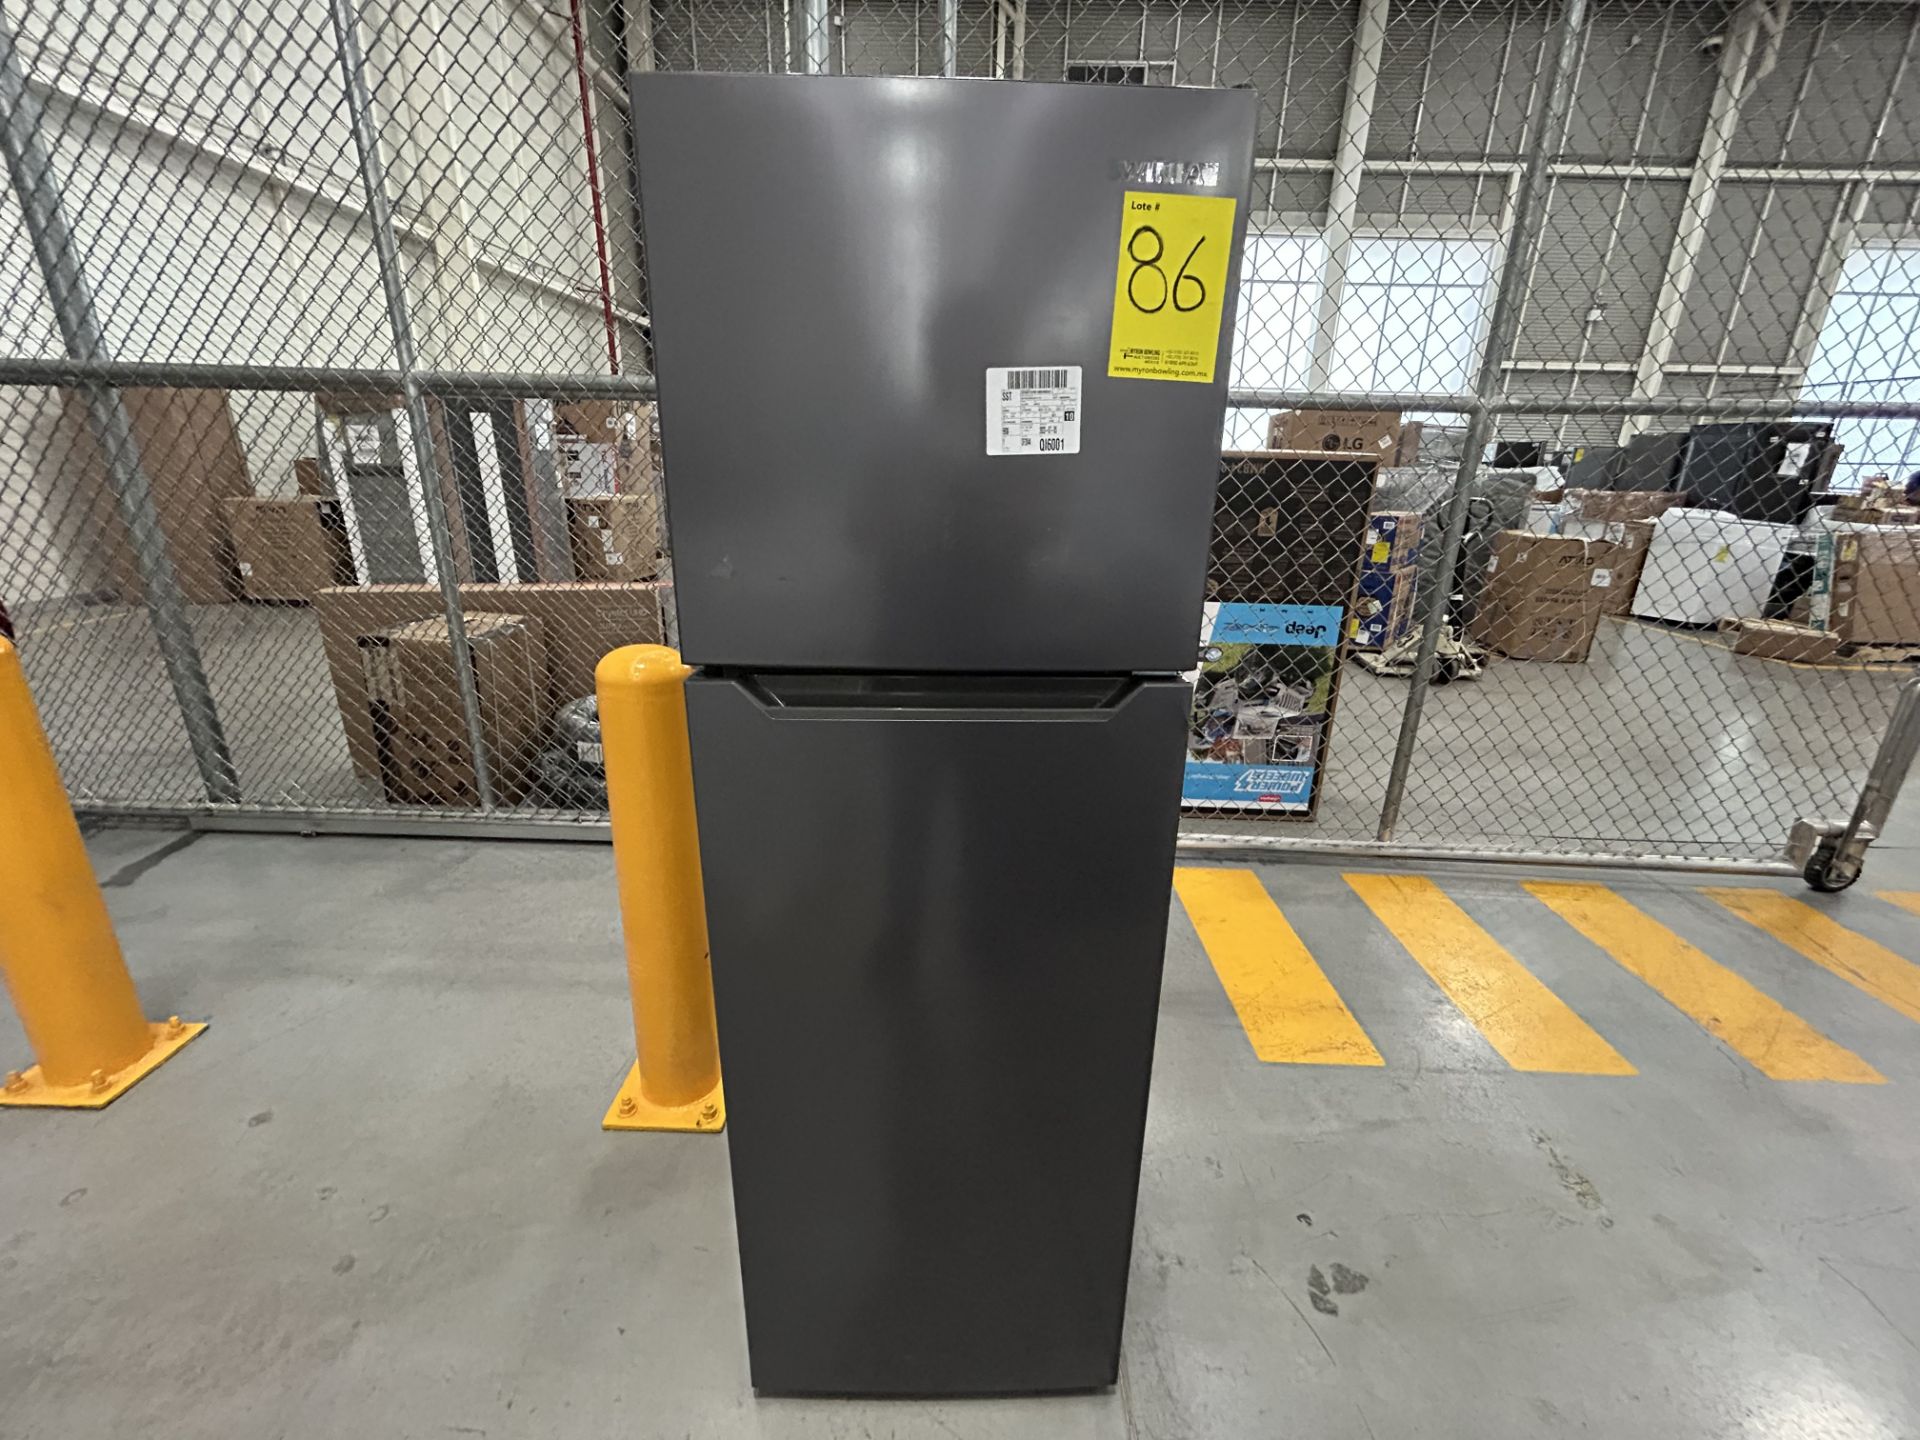 Lote de 2 refrigeradores contiene: 1 refrigerador Marca MABE, Modelo RME360FX, Serie 06730, Color G - Image 5 of 12